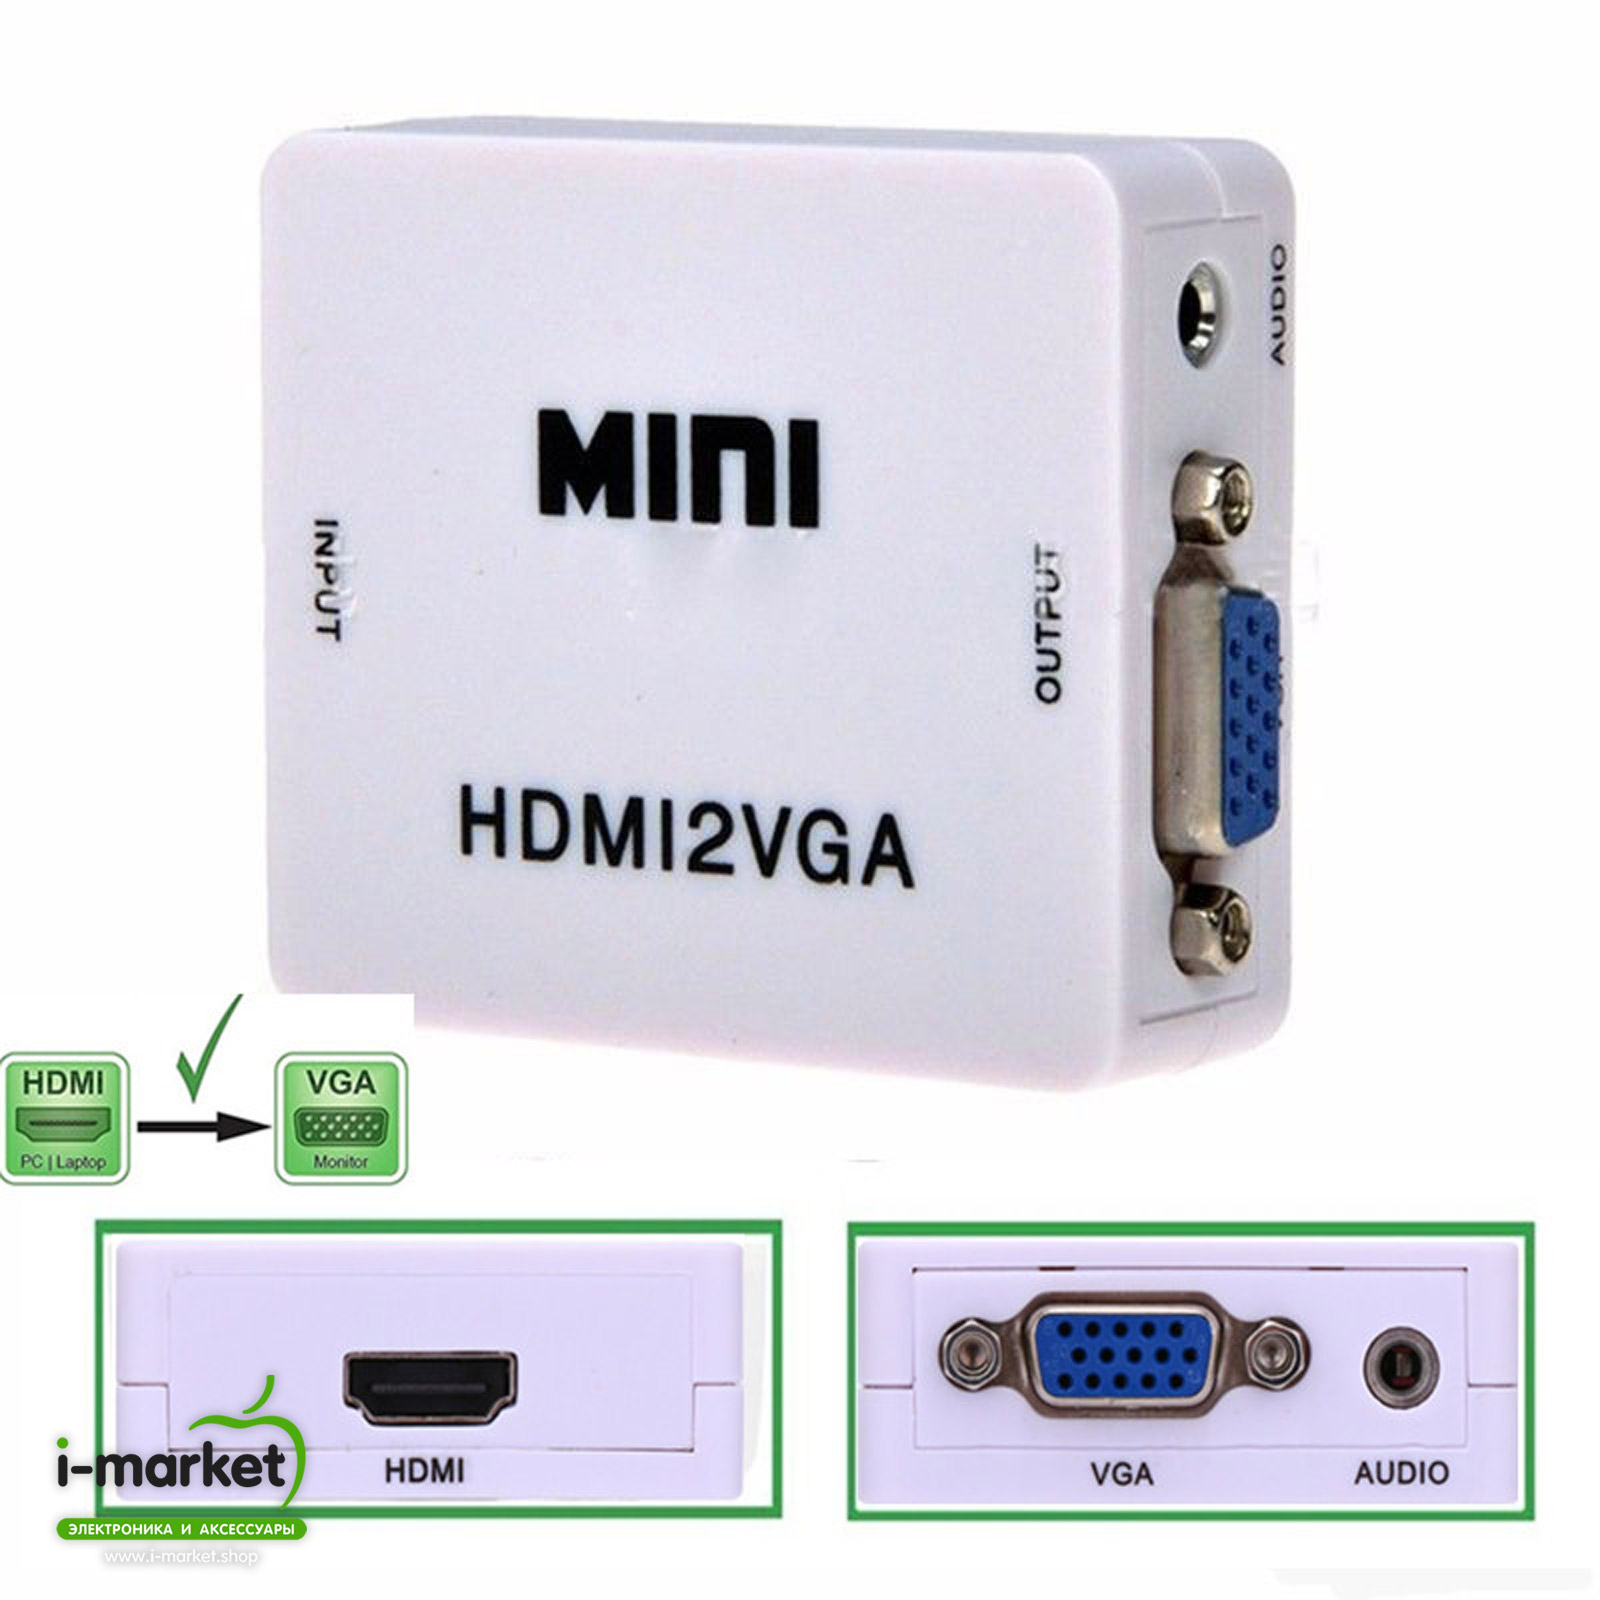 Переходник / конвертер / преобразователь видеосигнала HDMI2VGA с HDMI (1080P для TV) на VGA + Audio Cable, цвет белый.